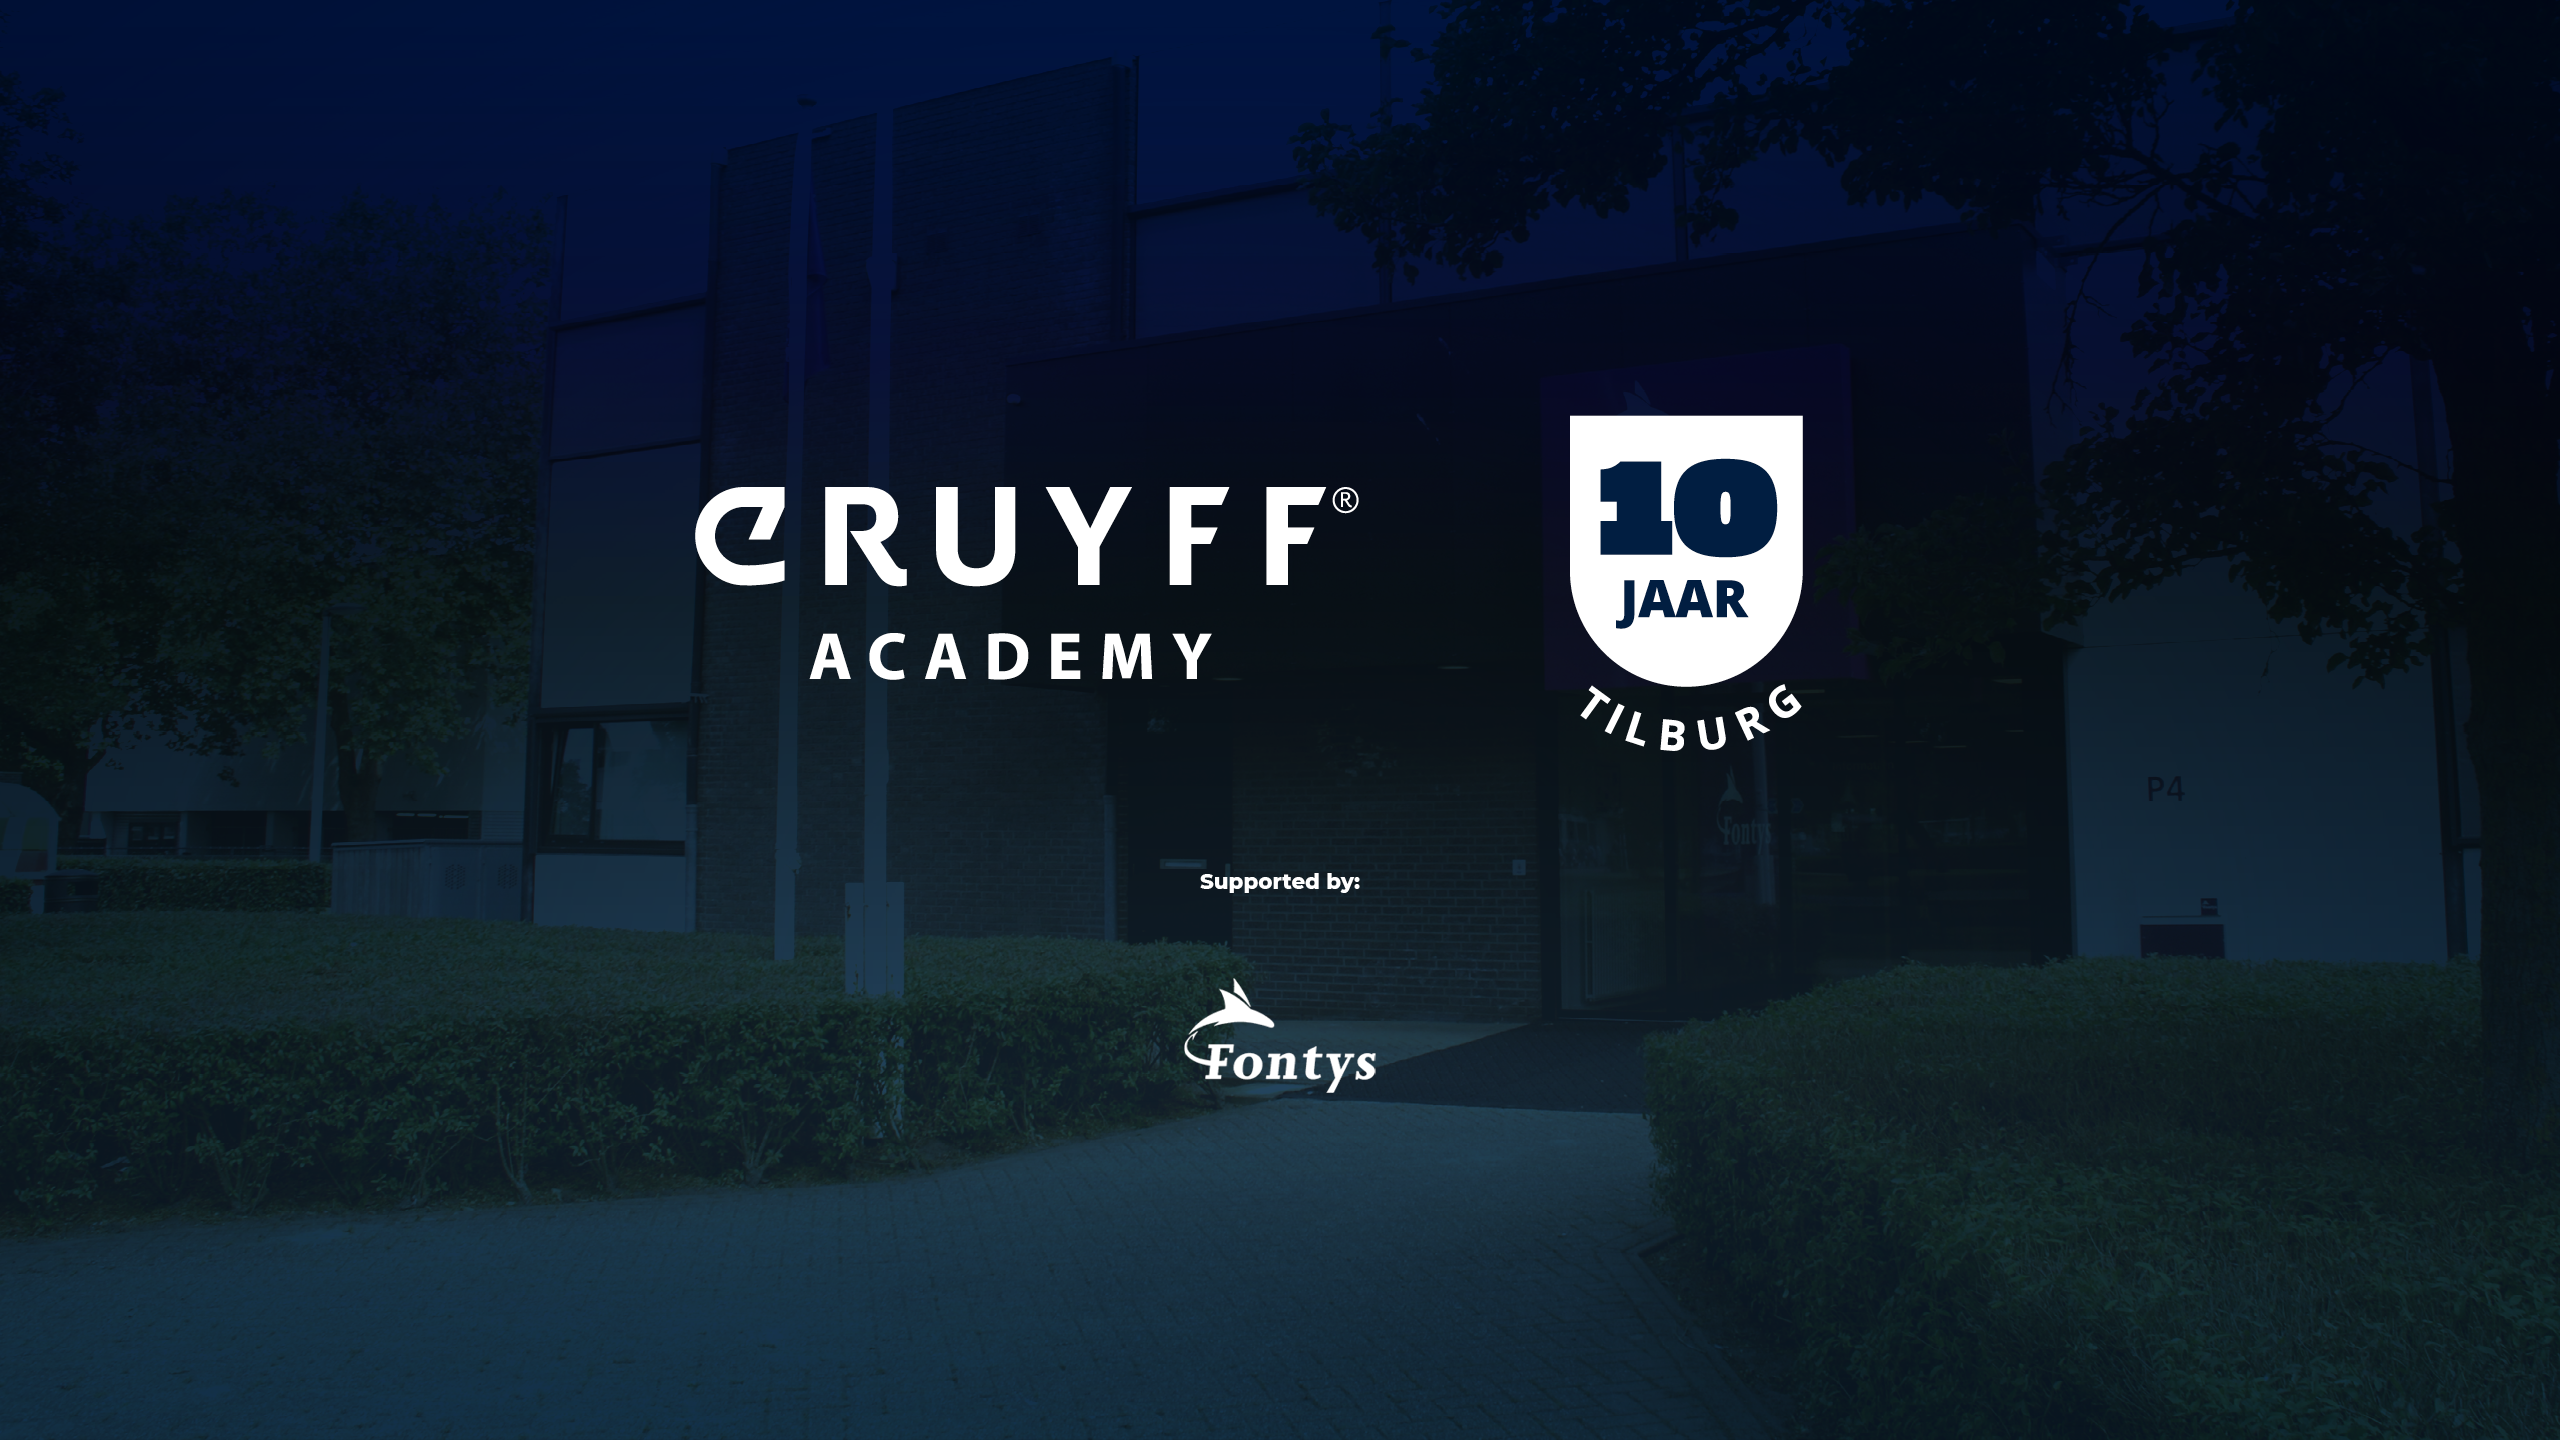 10 jaar Johan Cruyff Academy Tilburg